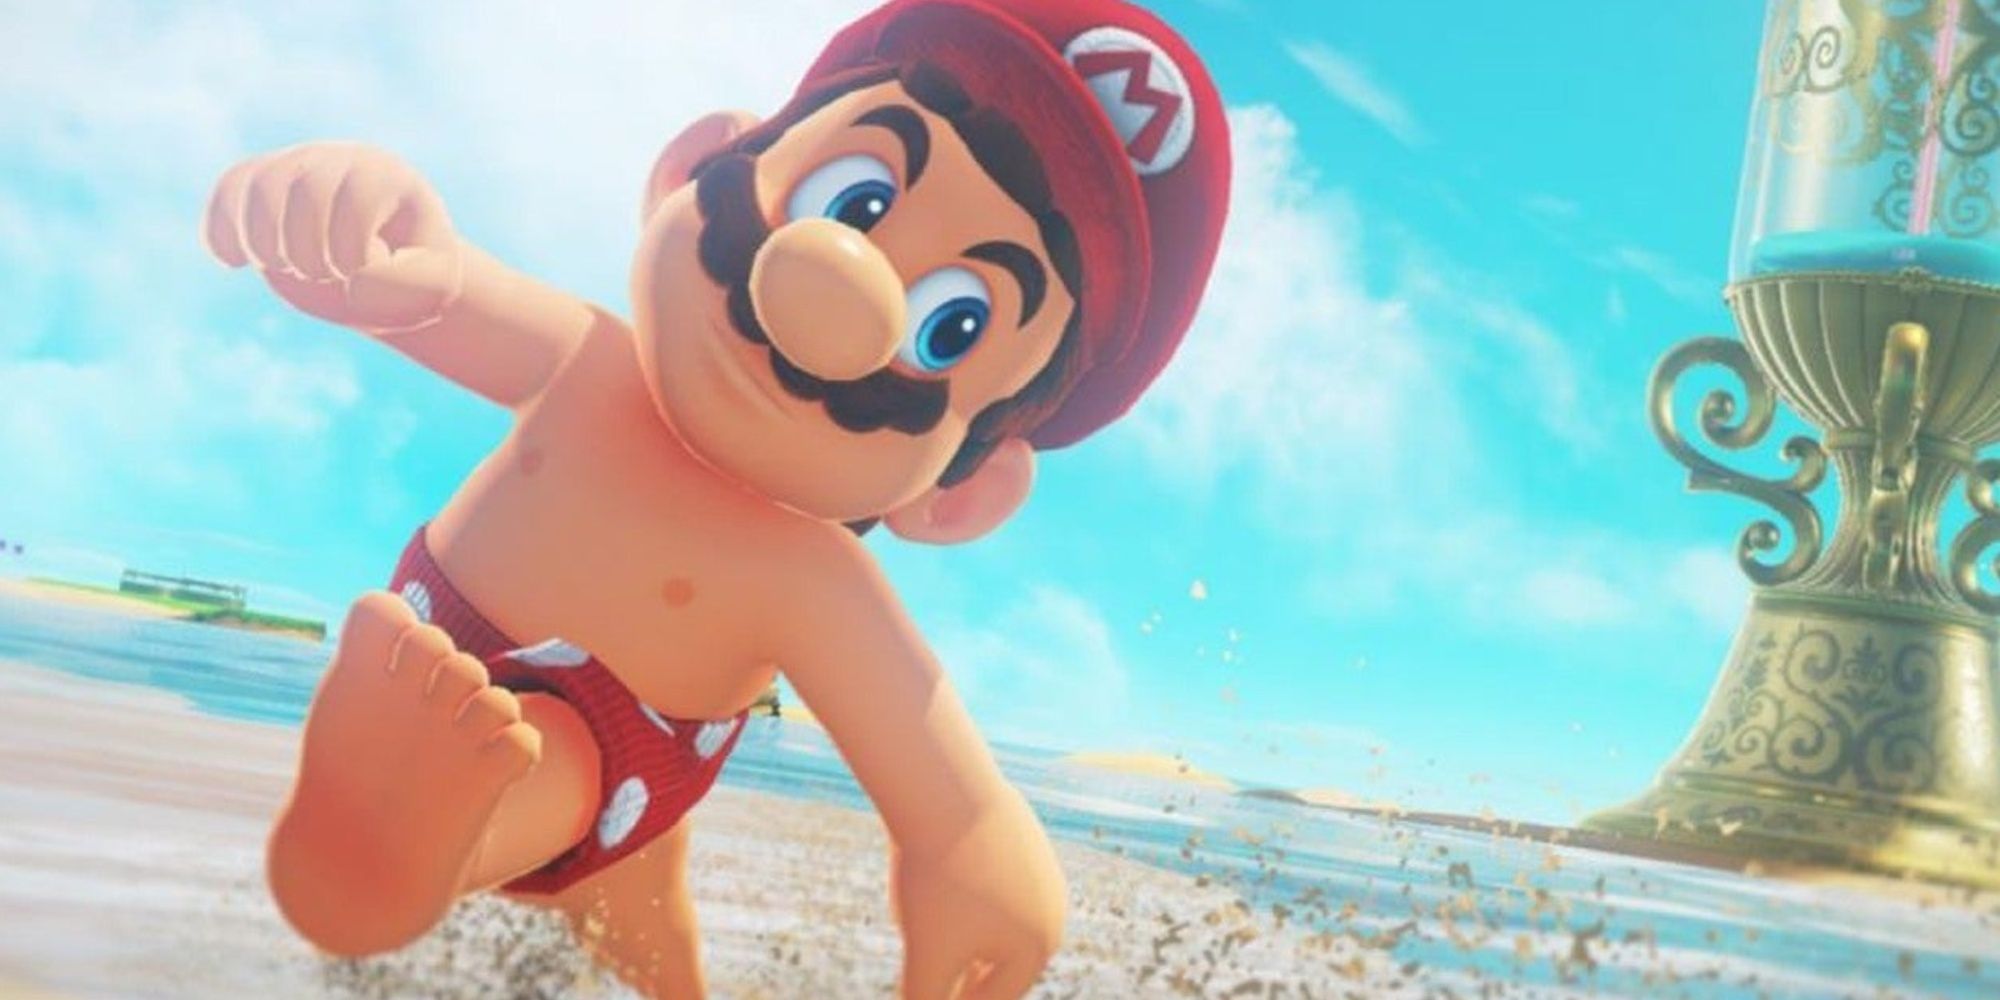 Boxer Mario in Super Mario Odyssey